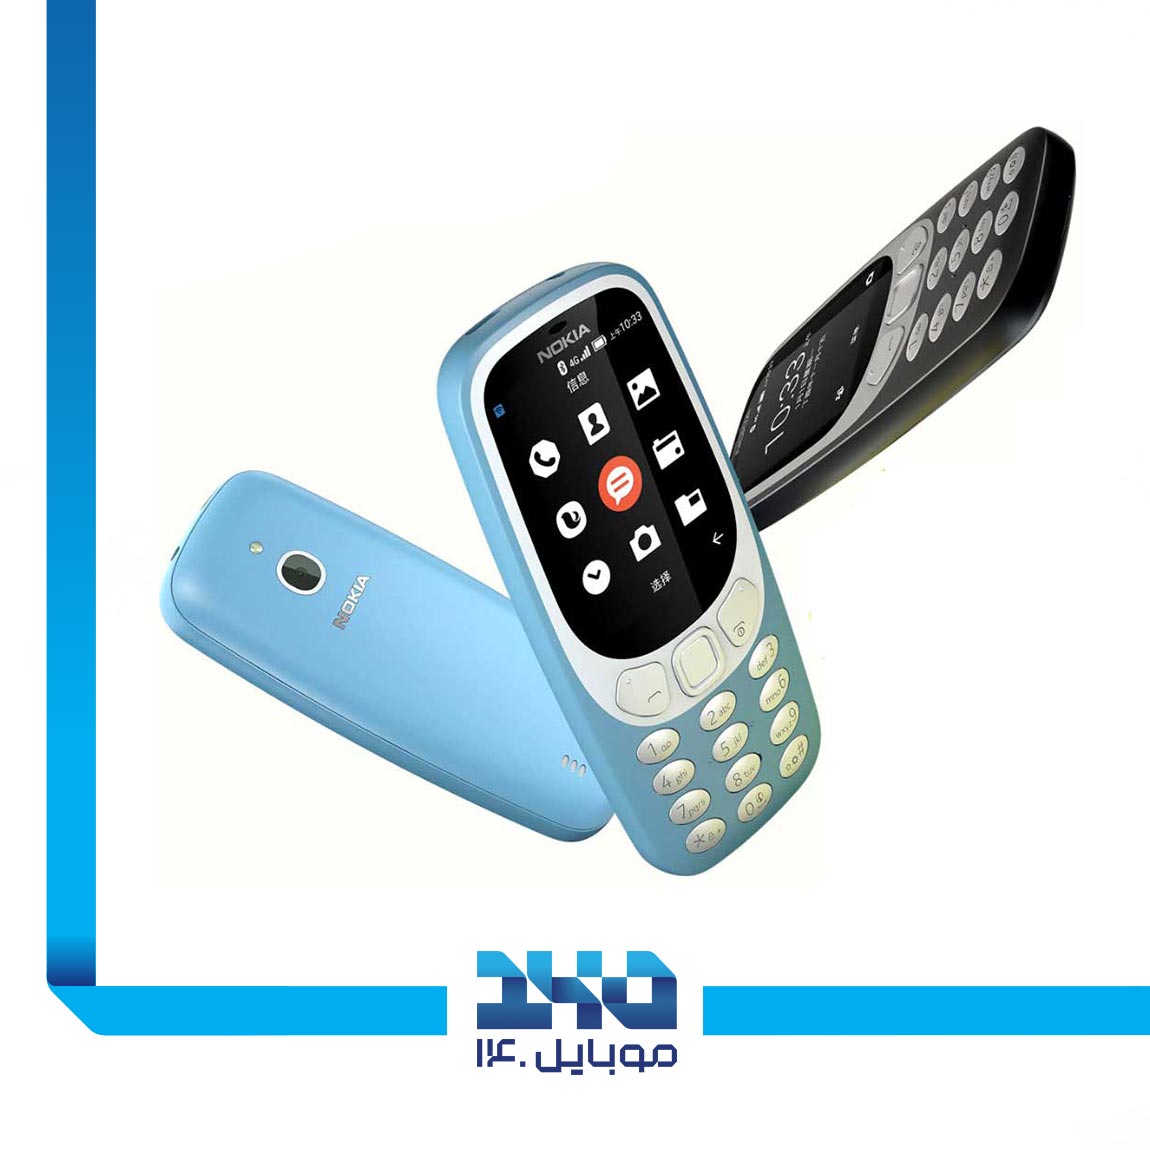 Nokia 3310 (FA) Mobile Phone 3